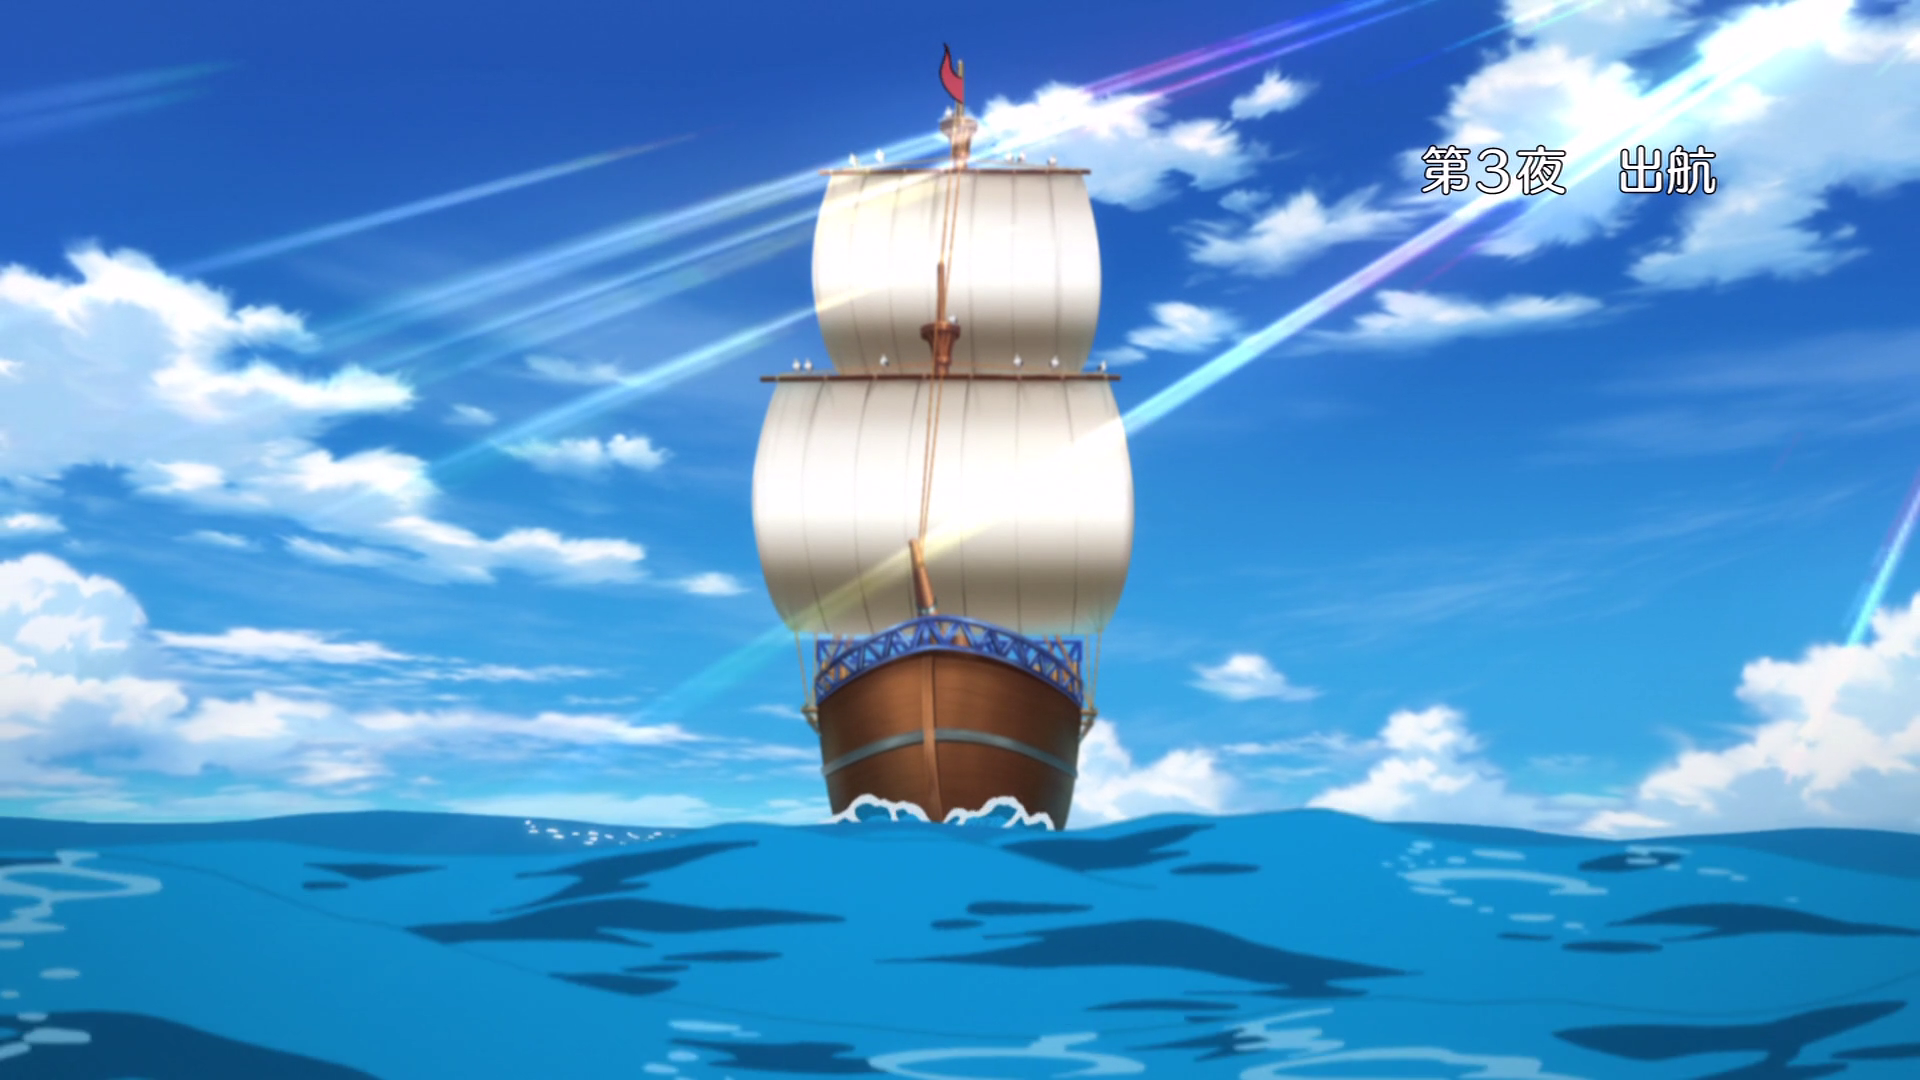 VTuber Houshou Marine Goes Pirating in Anime MV for Her Latest Single  'Marine Set Sail!!' - Crunchyroll News